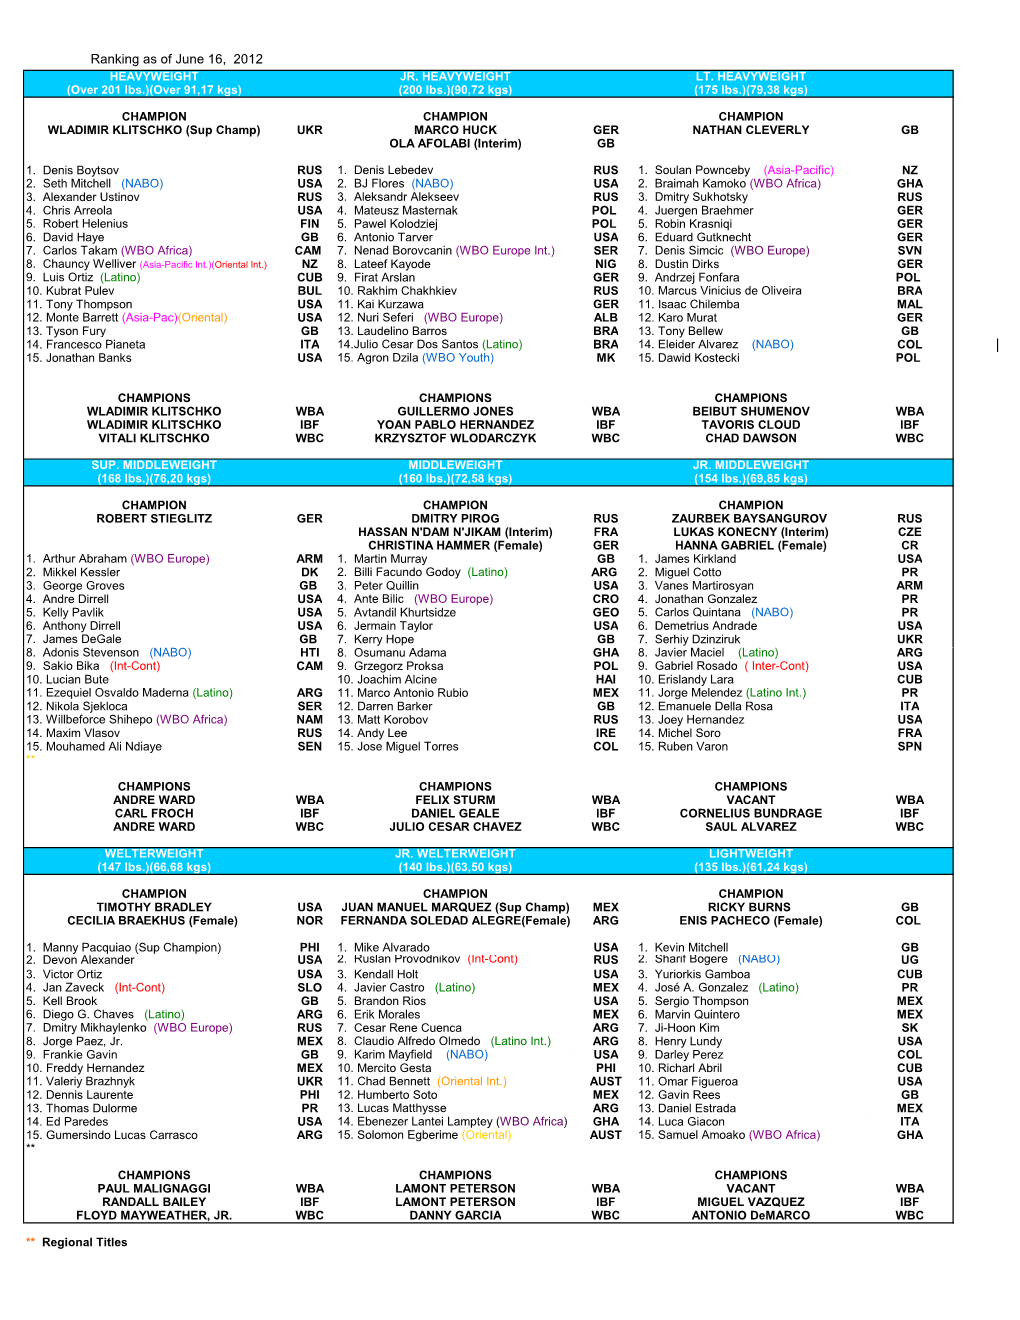 WBO Ranking As of June 2012